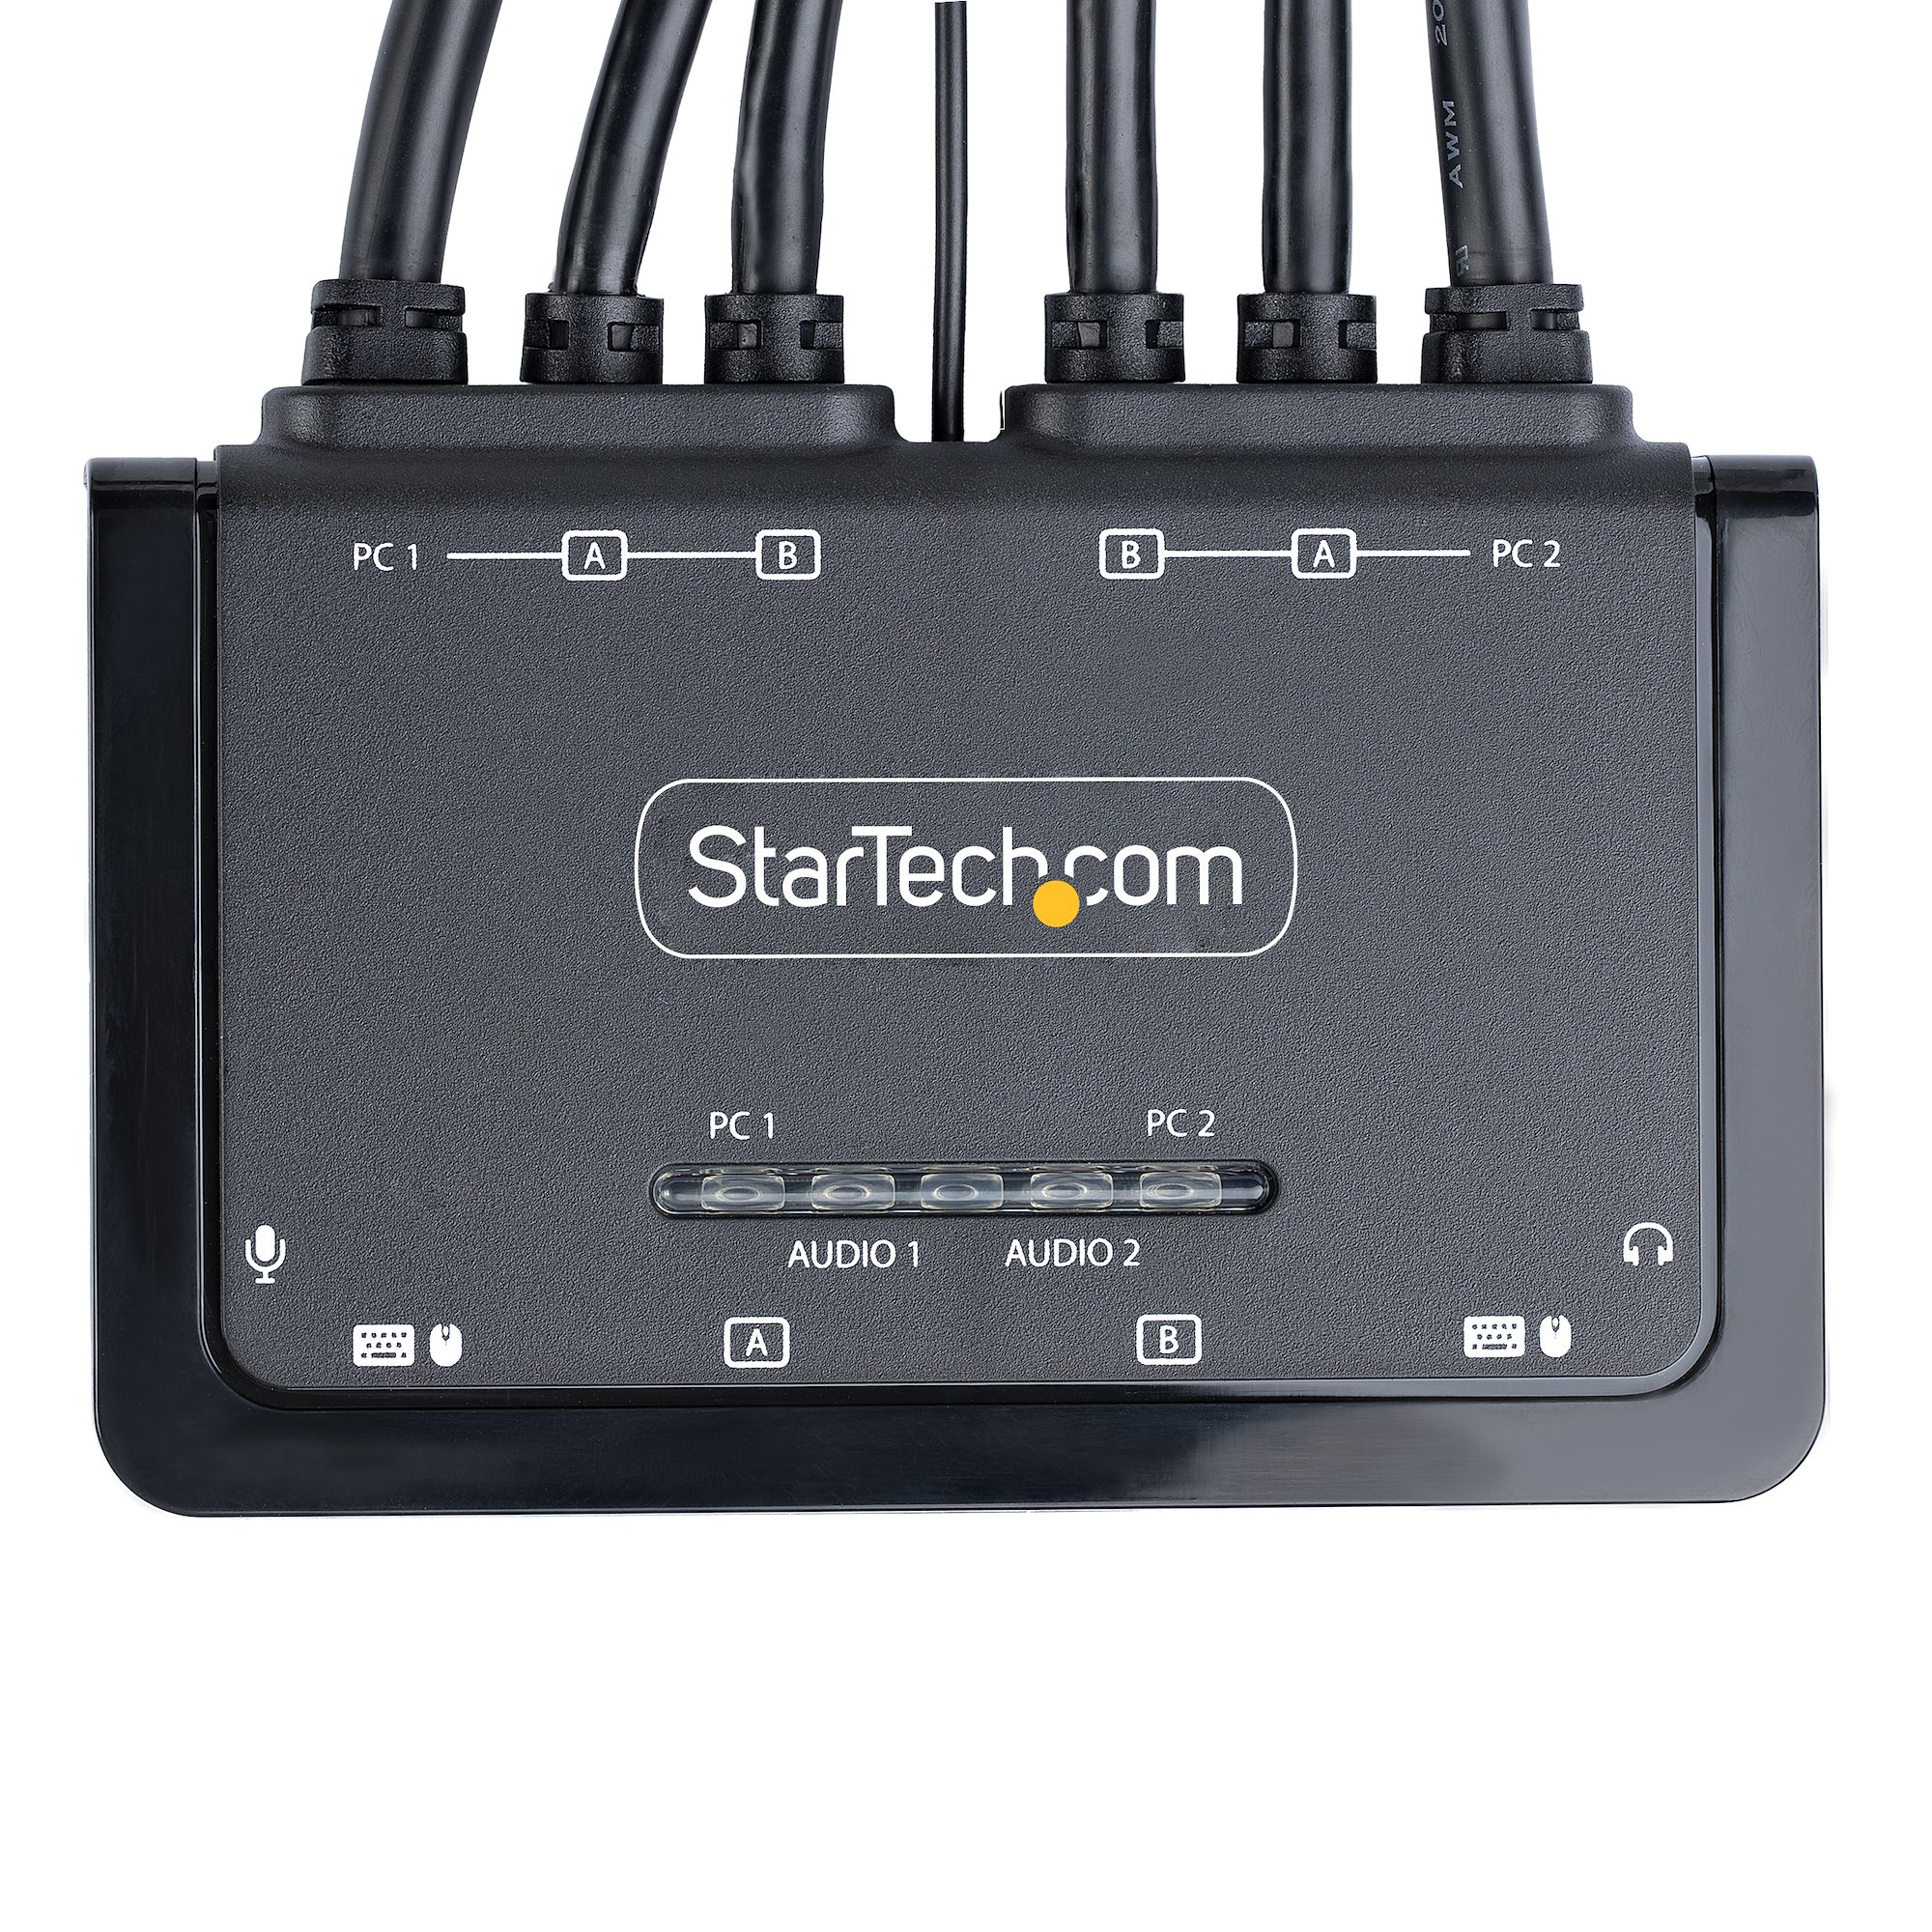 StarTech.com Switch commutateur HDMI 4K 60 Hz à 2 entrées - HDMI